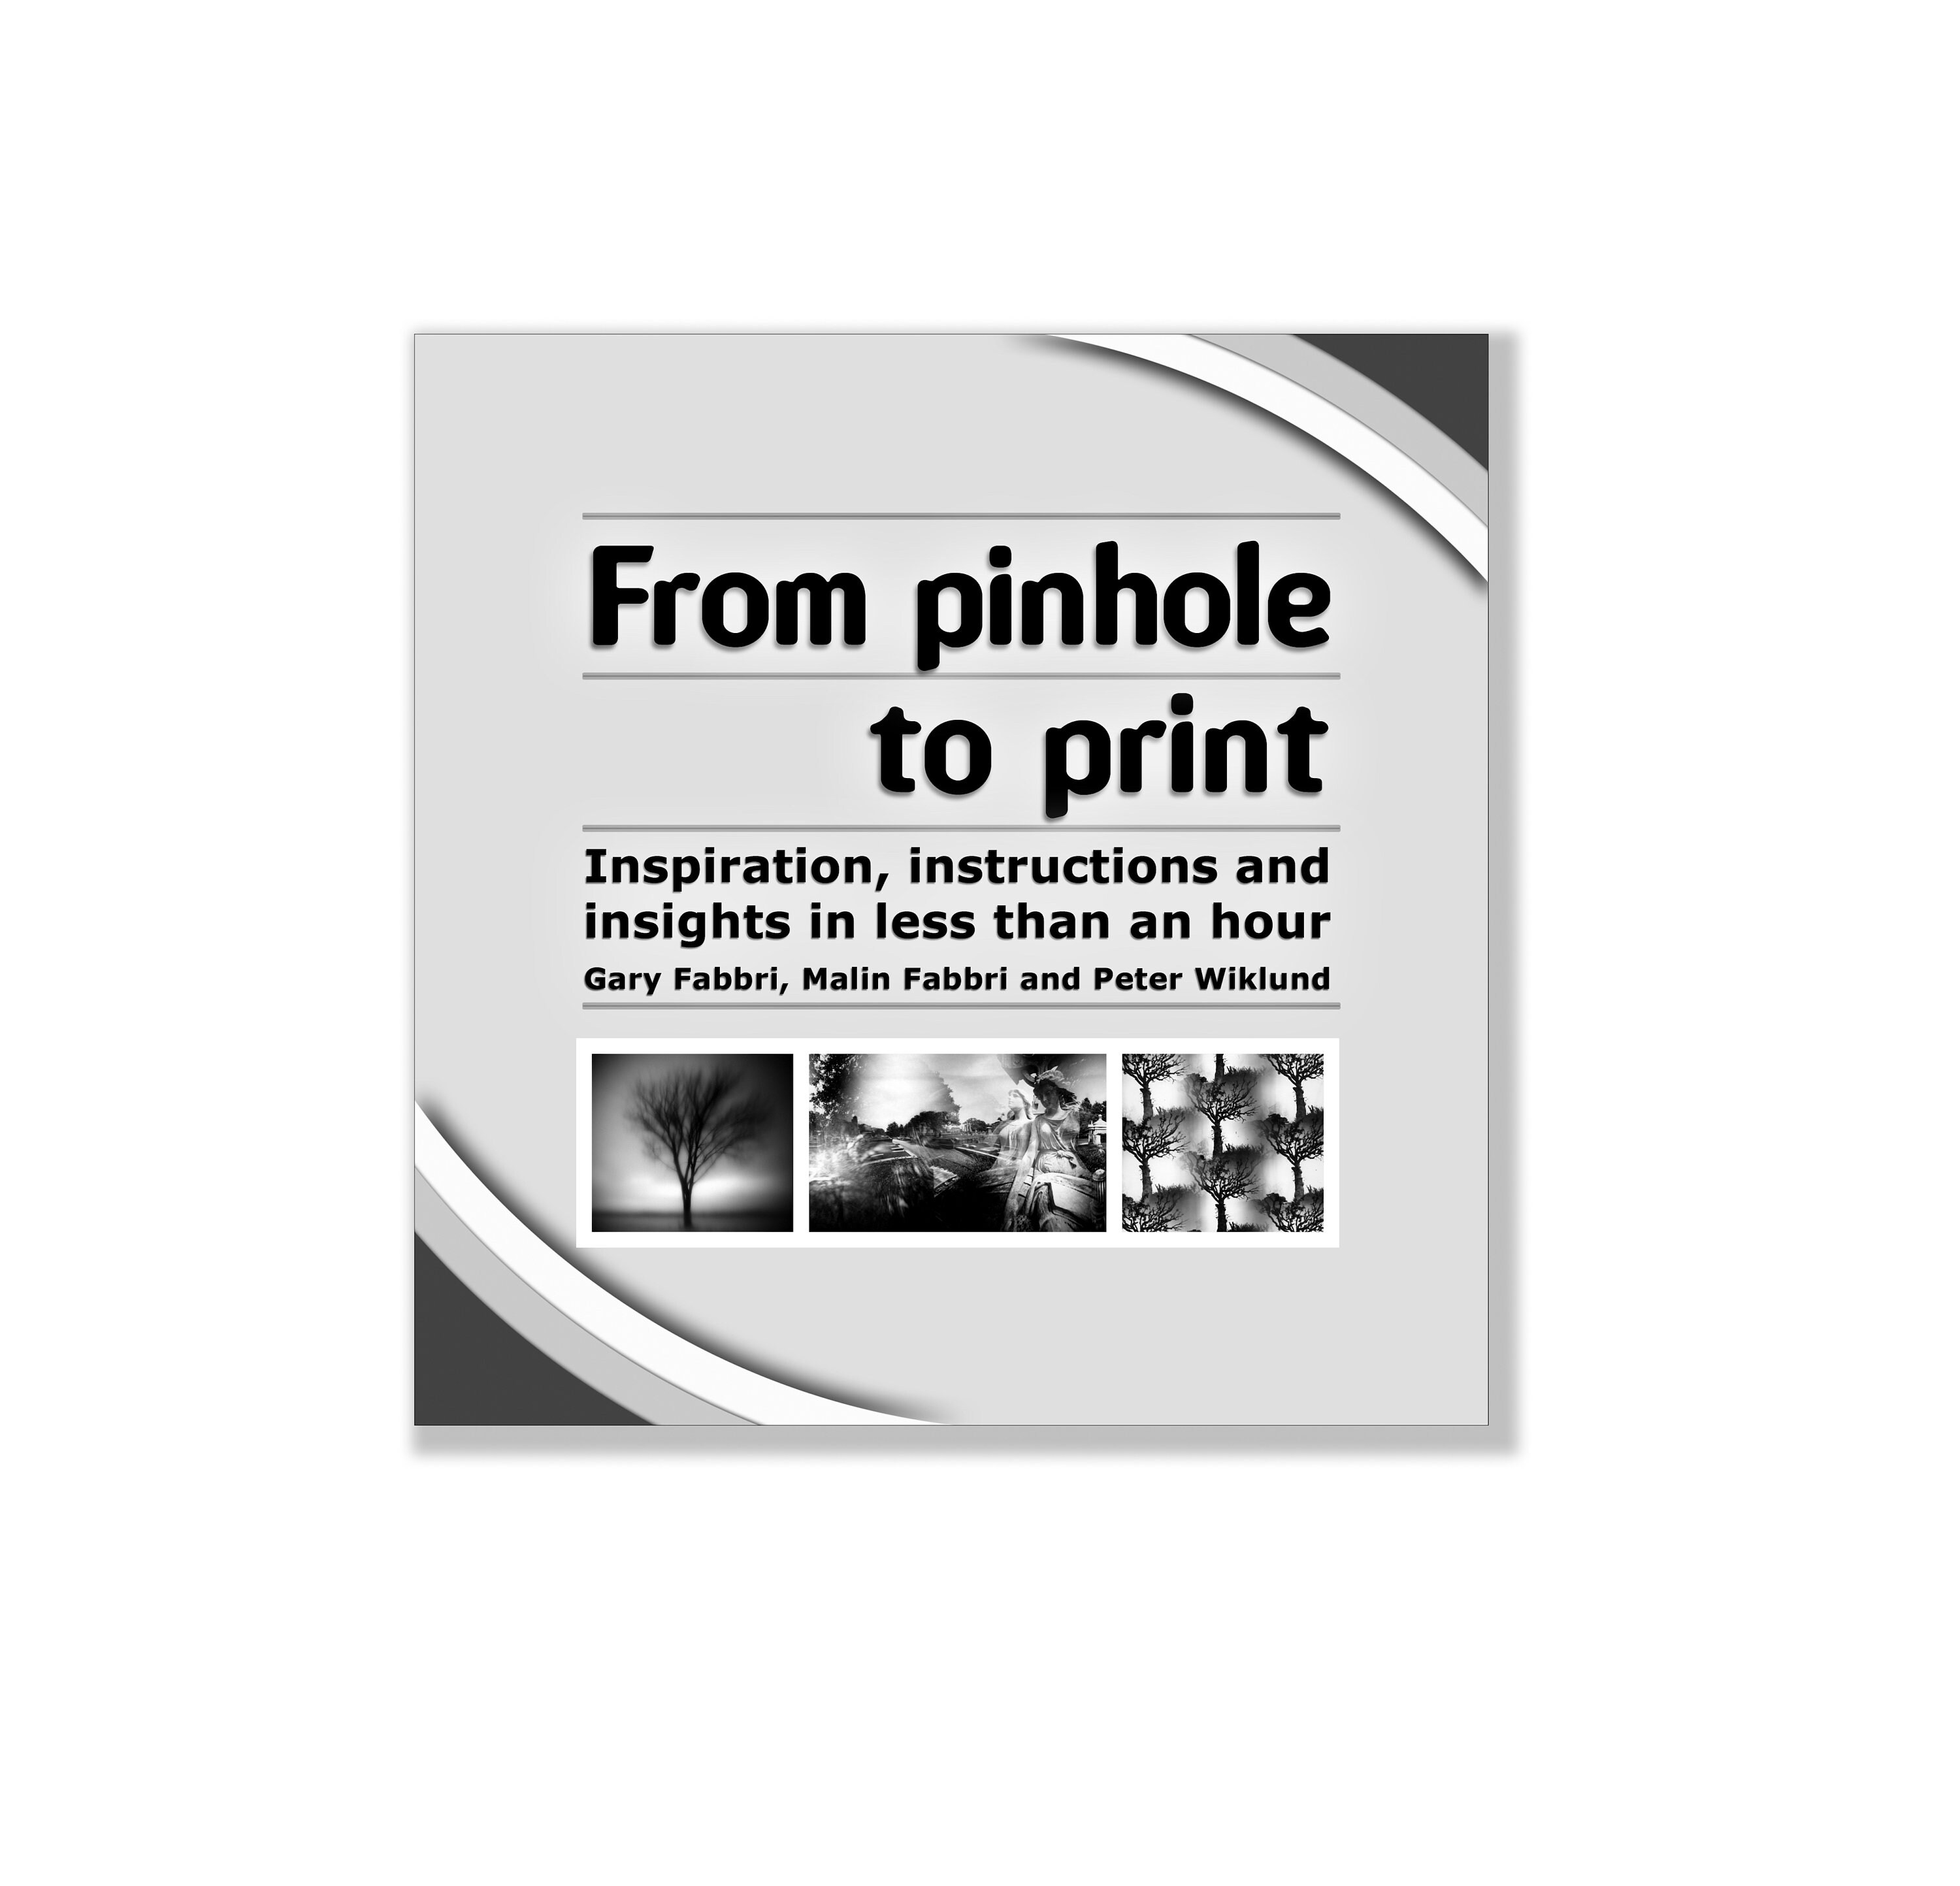 Pinhole camera Etsy 日本